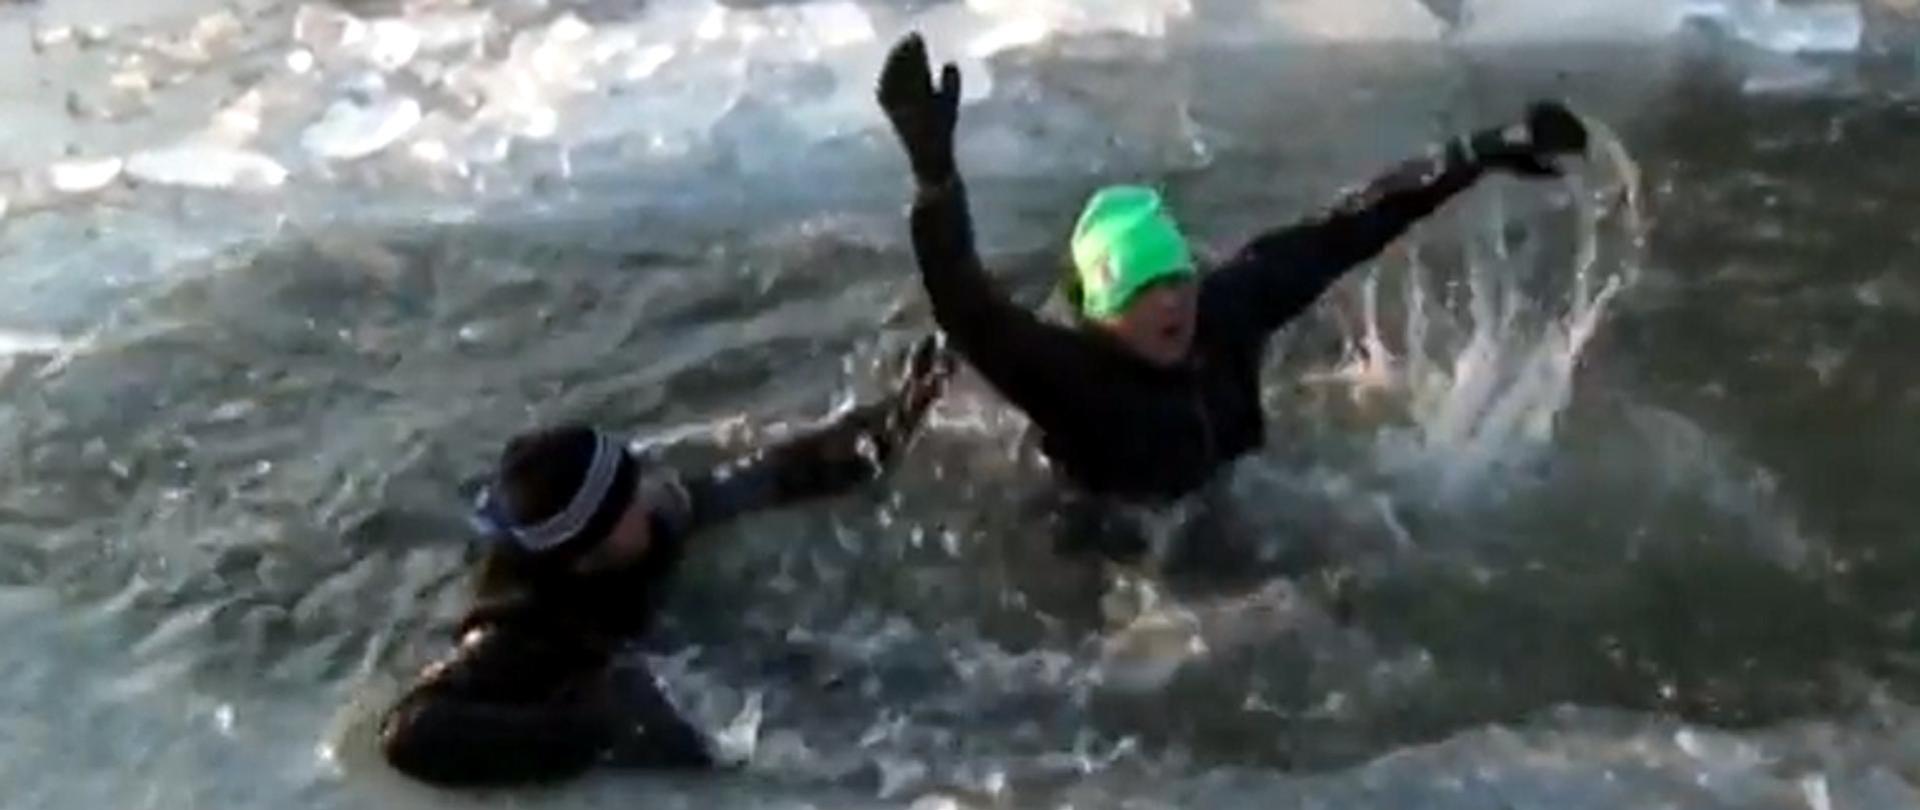 Zdjęcie przedstawia osobę topiącą się wskutek załamania lodu, obok osoba ratująca.